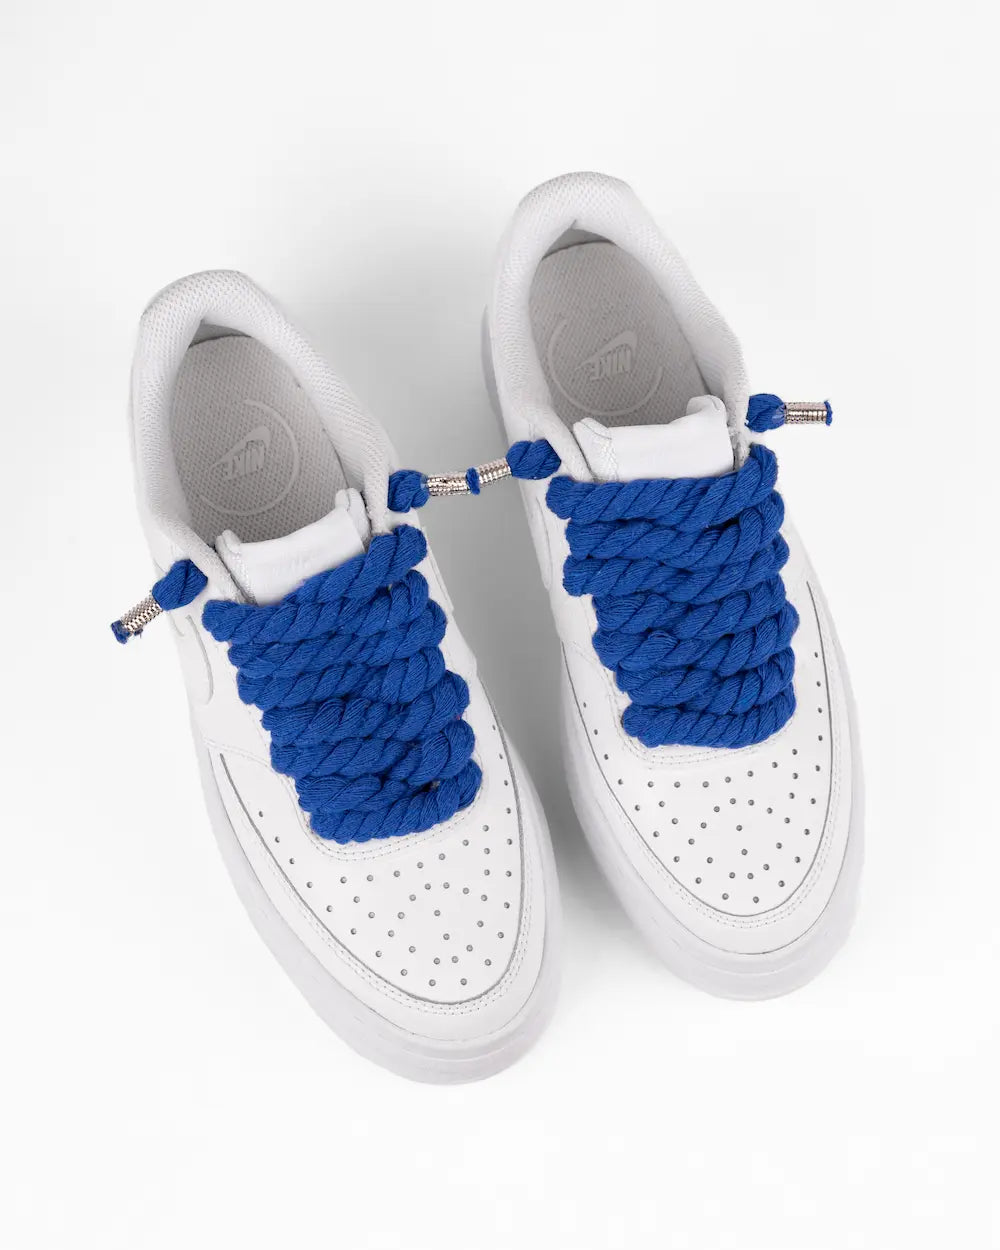 Nike Court Vision Platform personalizzata con lacci in corda grossi blu